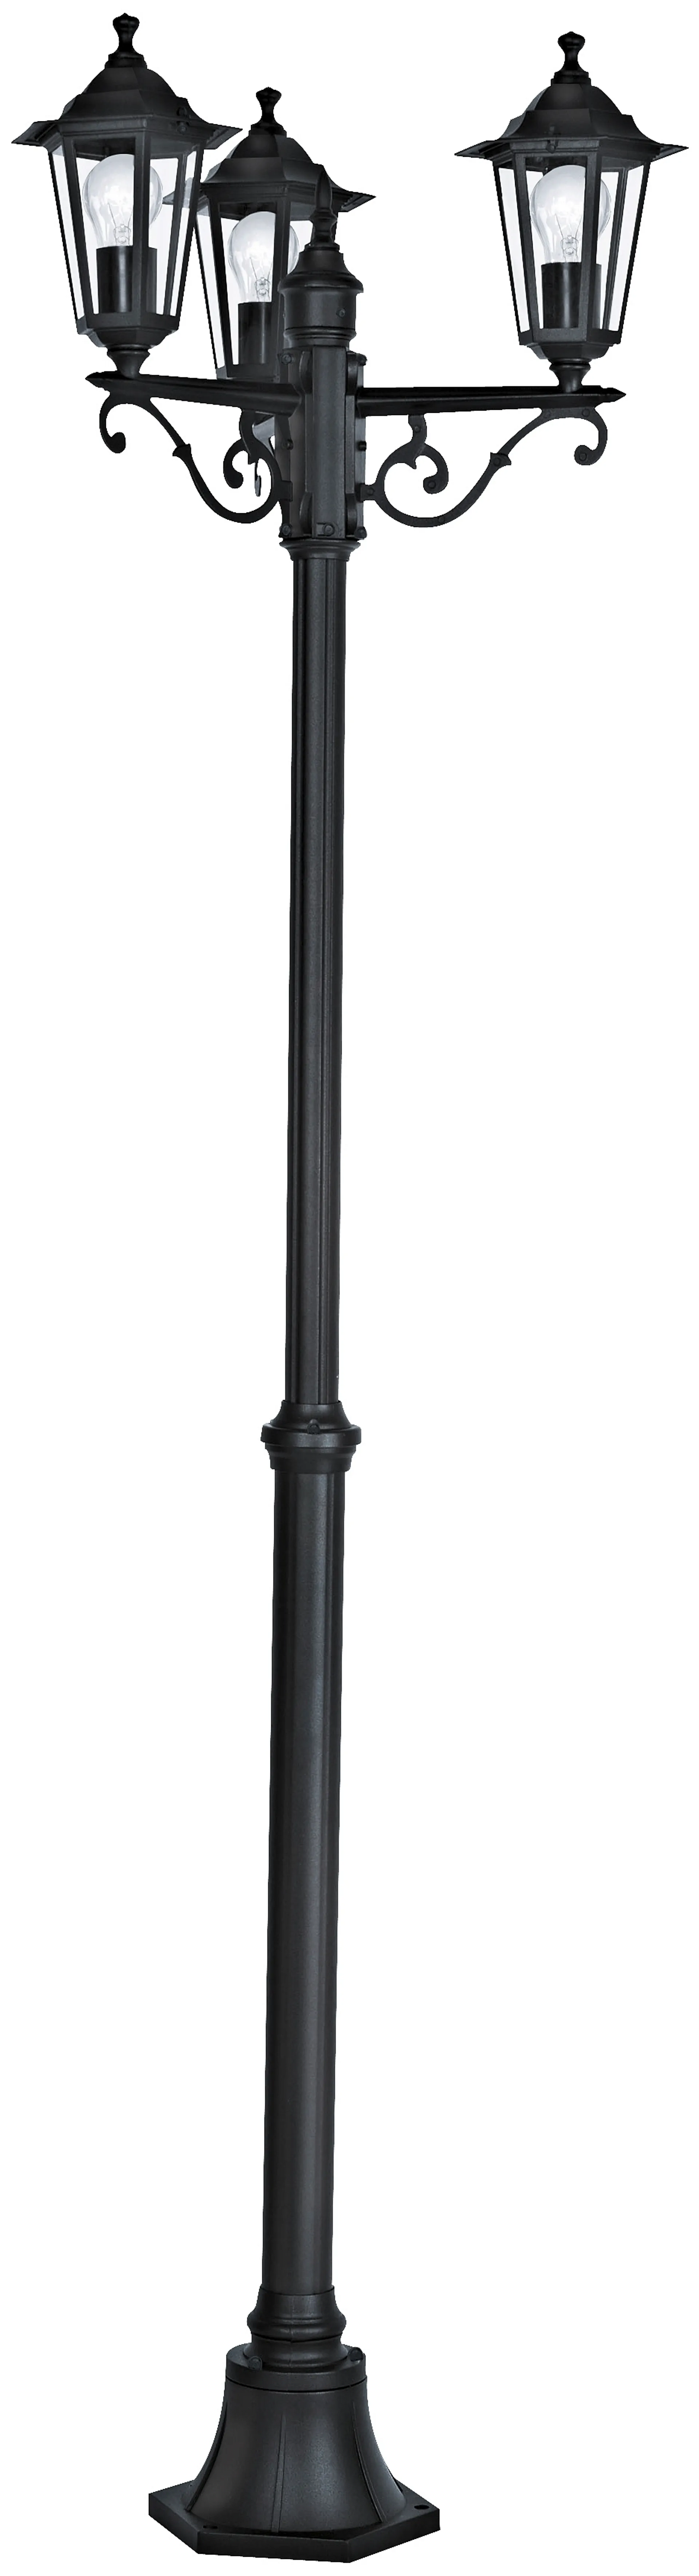 Eglo ulkopylväsvalaisin Laterna 192cm 3-osainen musta - 1